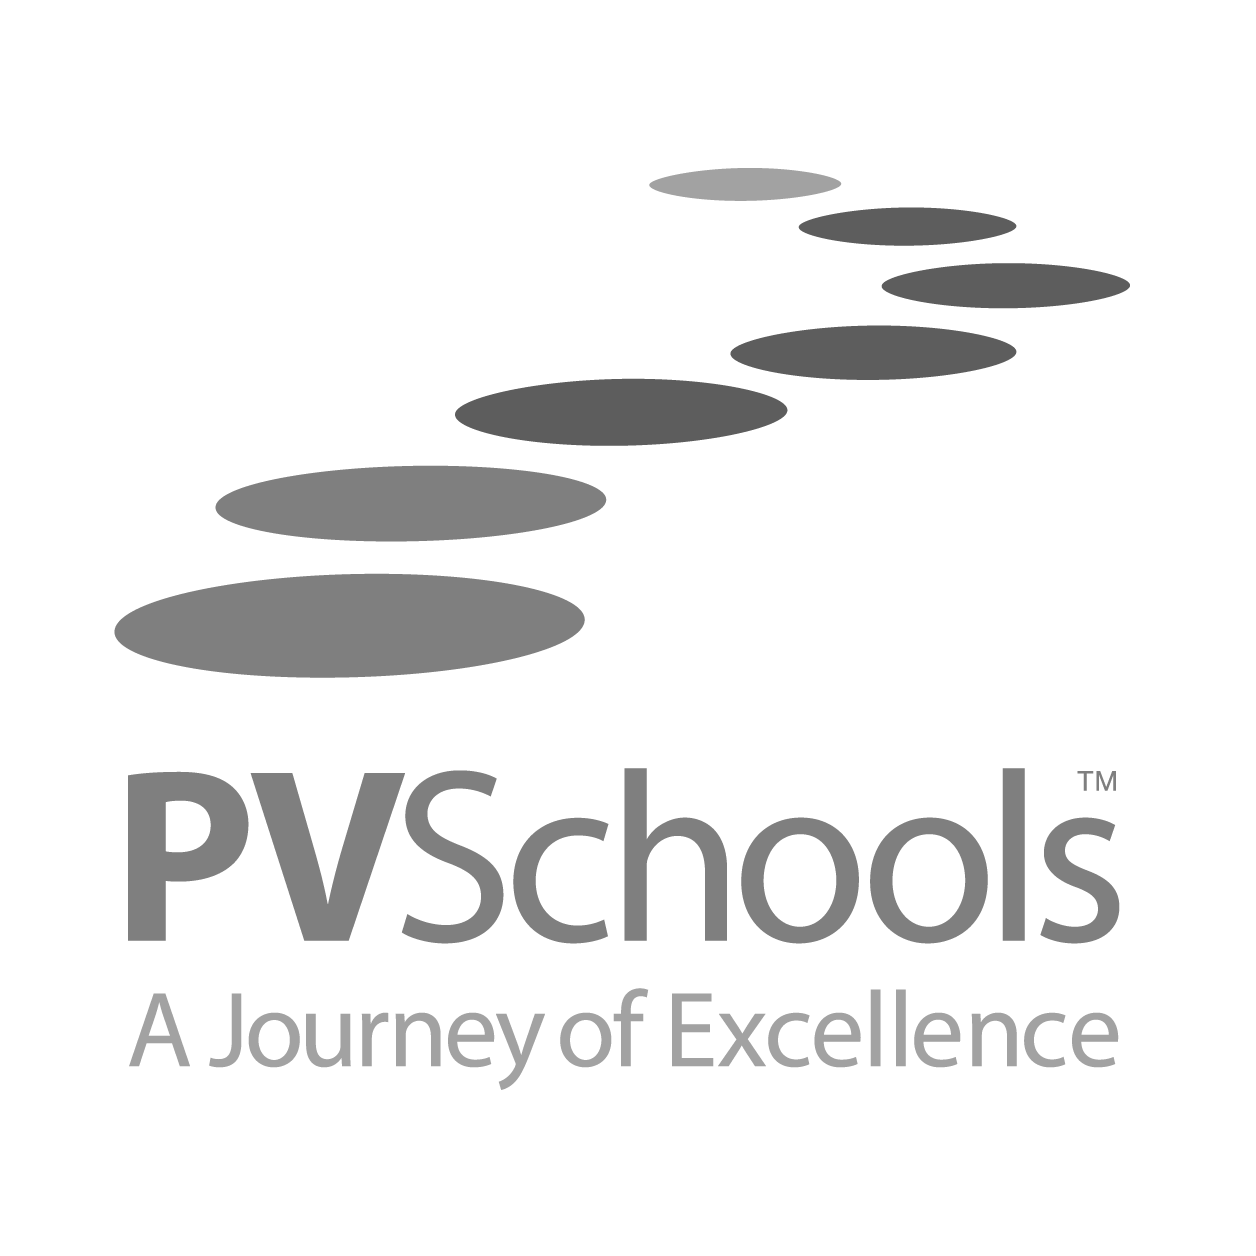 PVschools logo